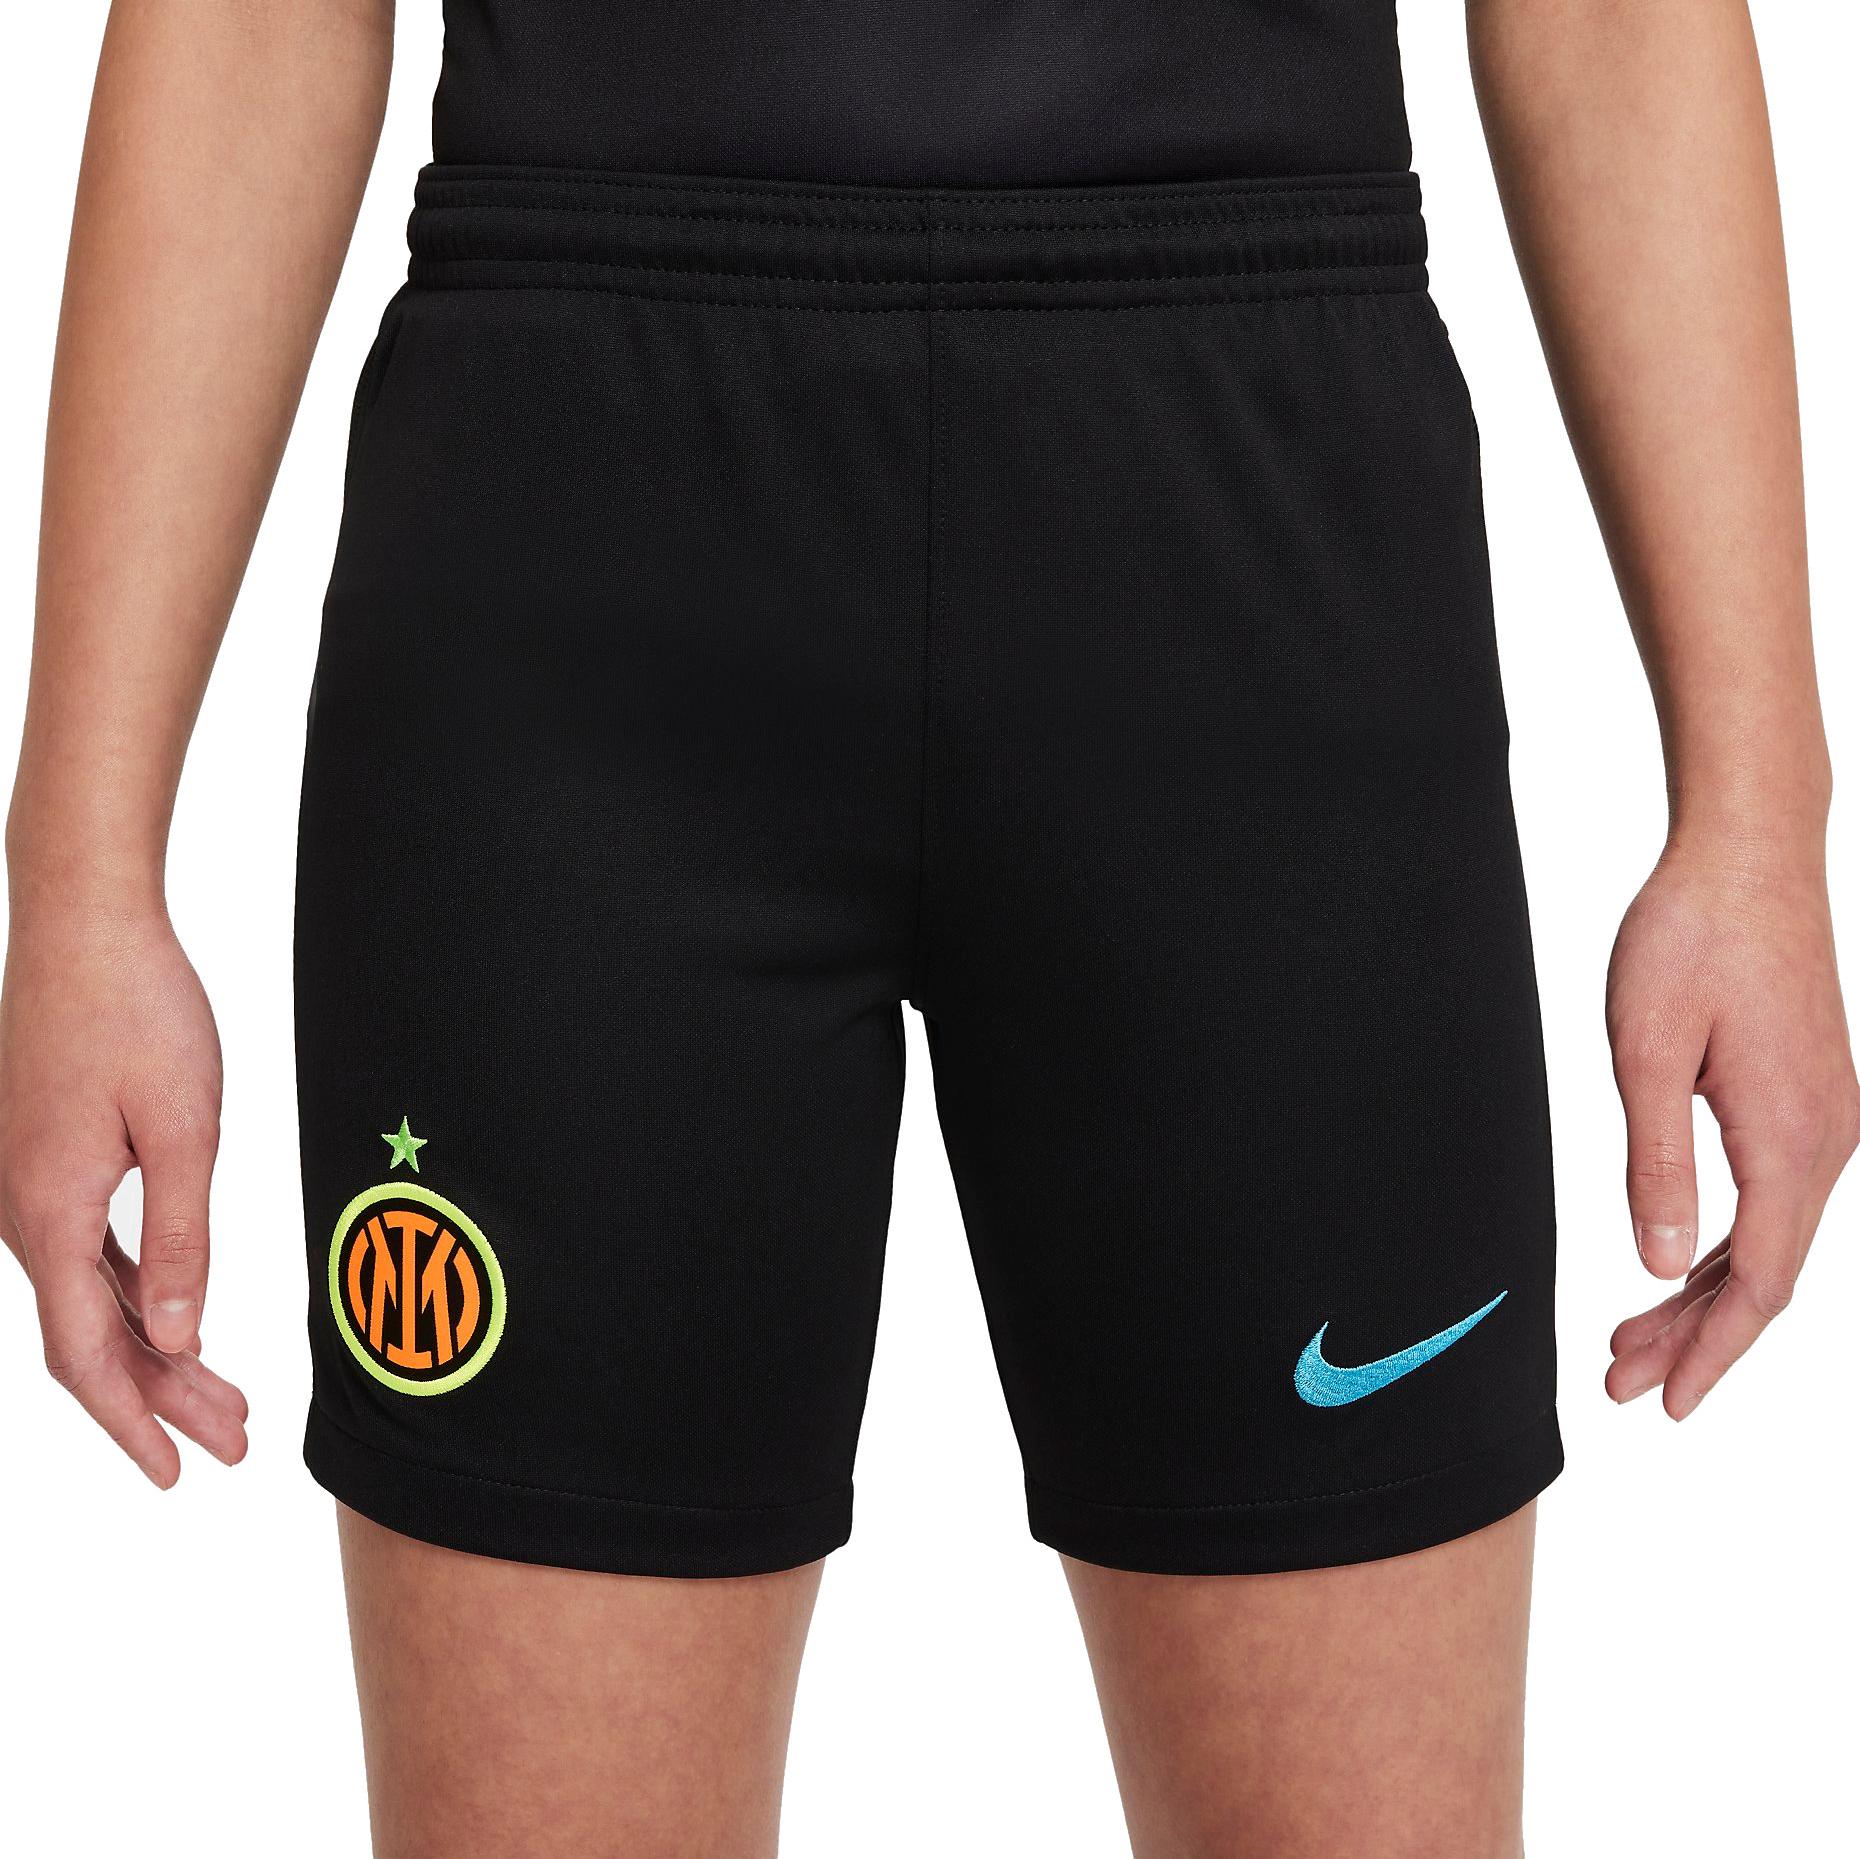 Dětské fotbalové šortky Nike Inter Milan 2021/22, alternativní